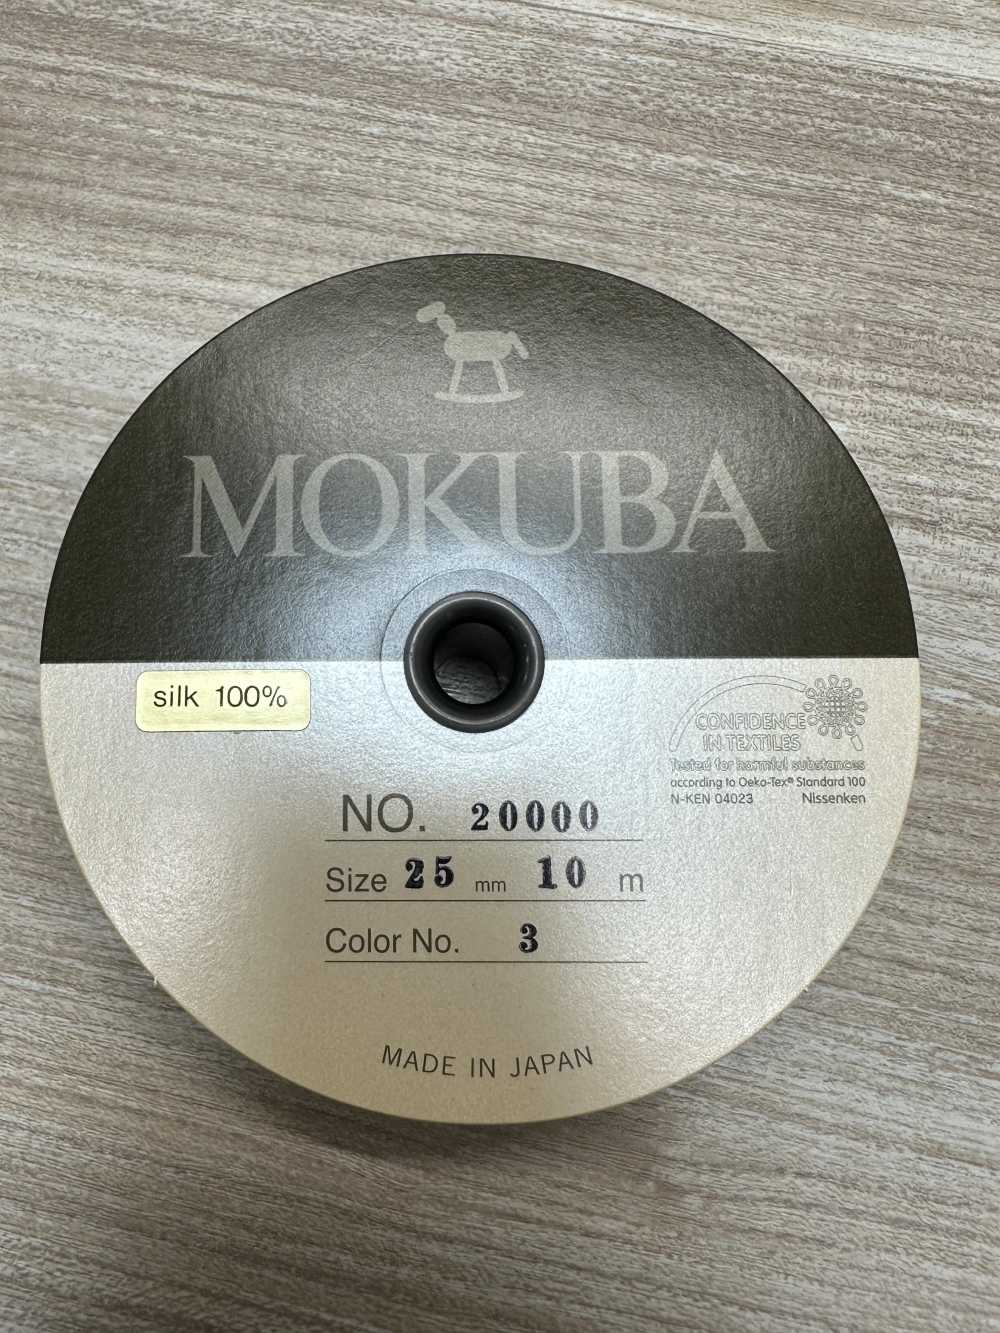 20000 Cinta De Grosgrain De Seda MOKUBA [outlet][Cordón De Cinta De Cinta] Mokuba